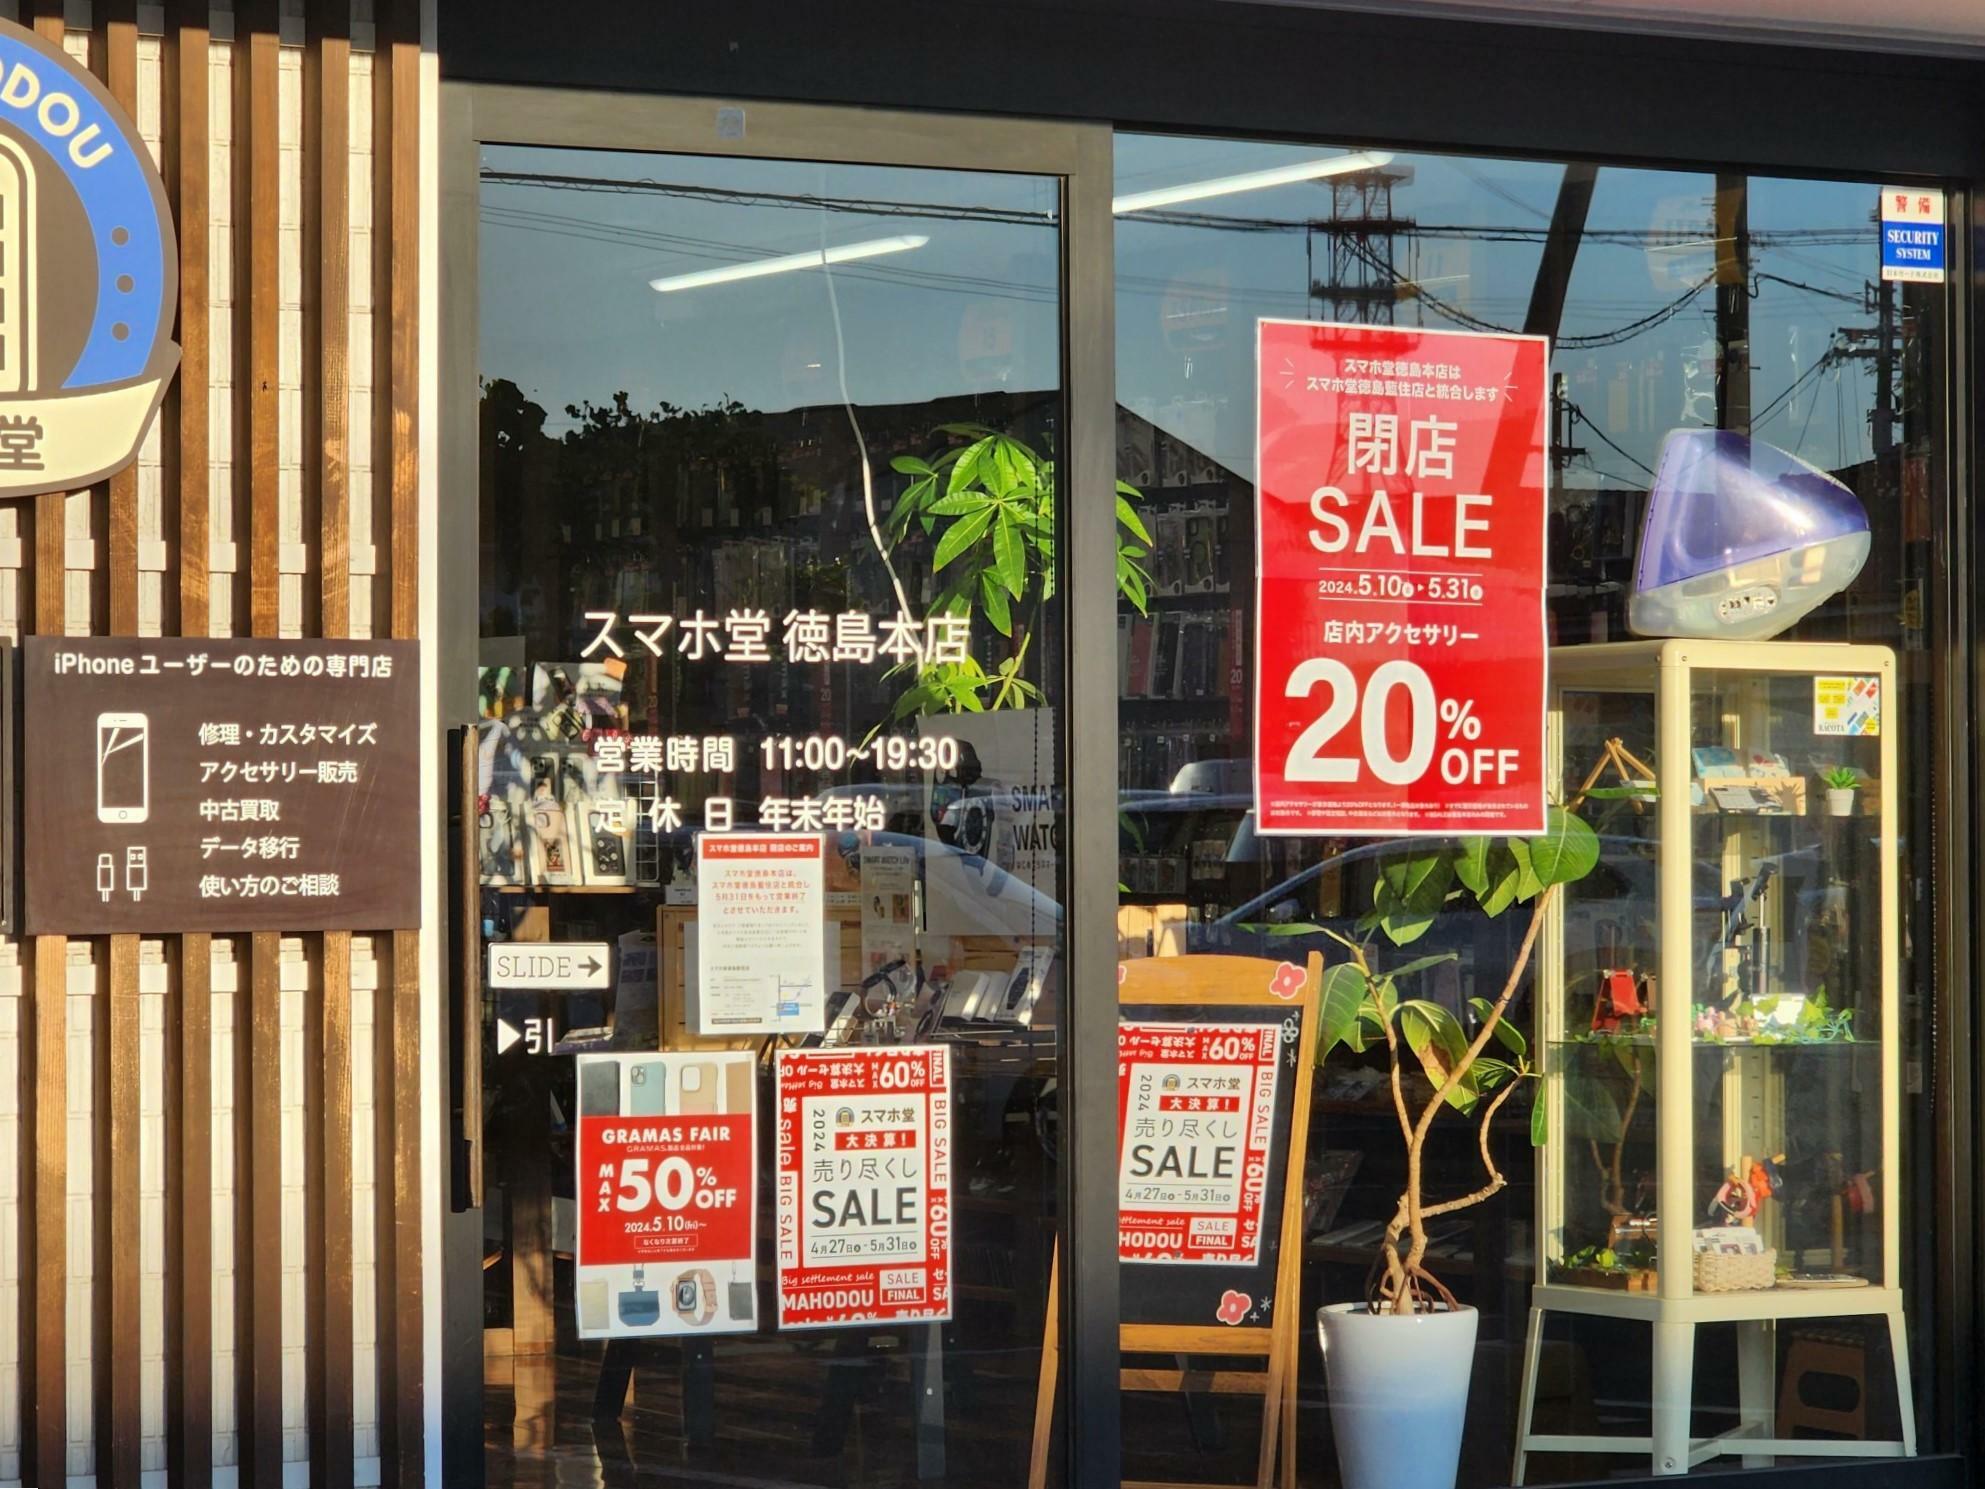 「スマホ堂 徳島本店」出入口と決算セールと閉店セールに関する告知物